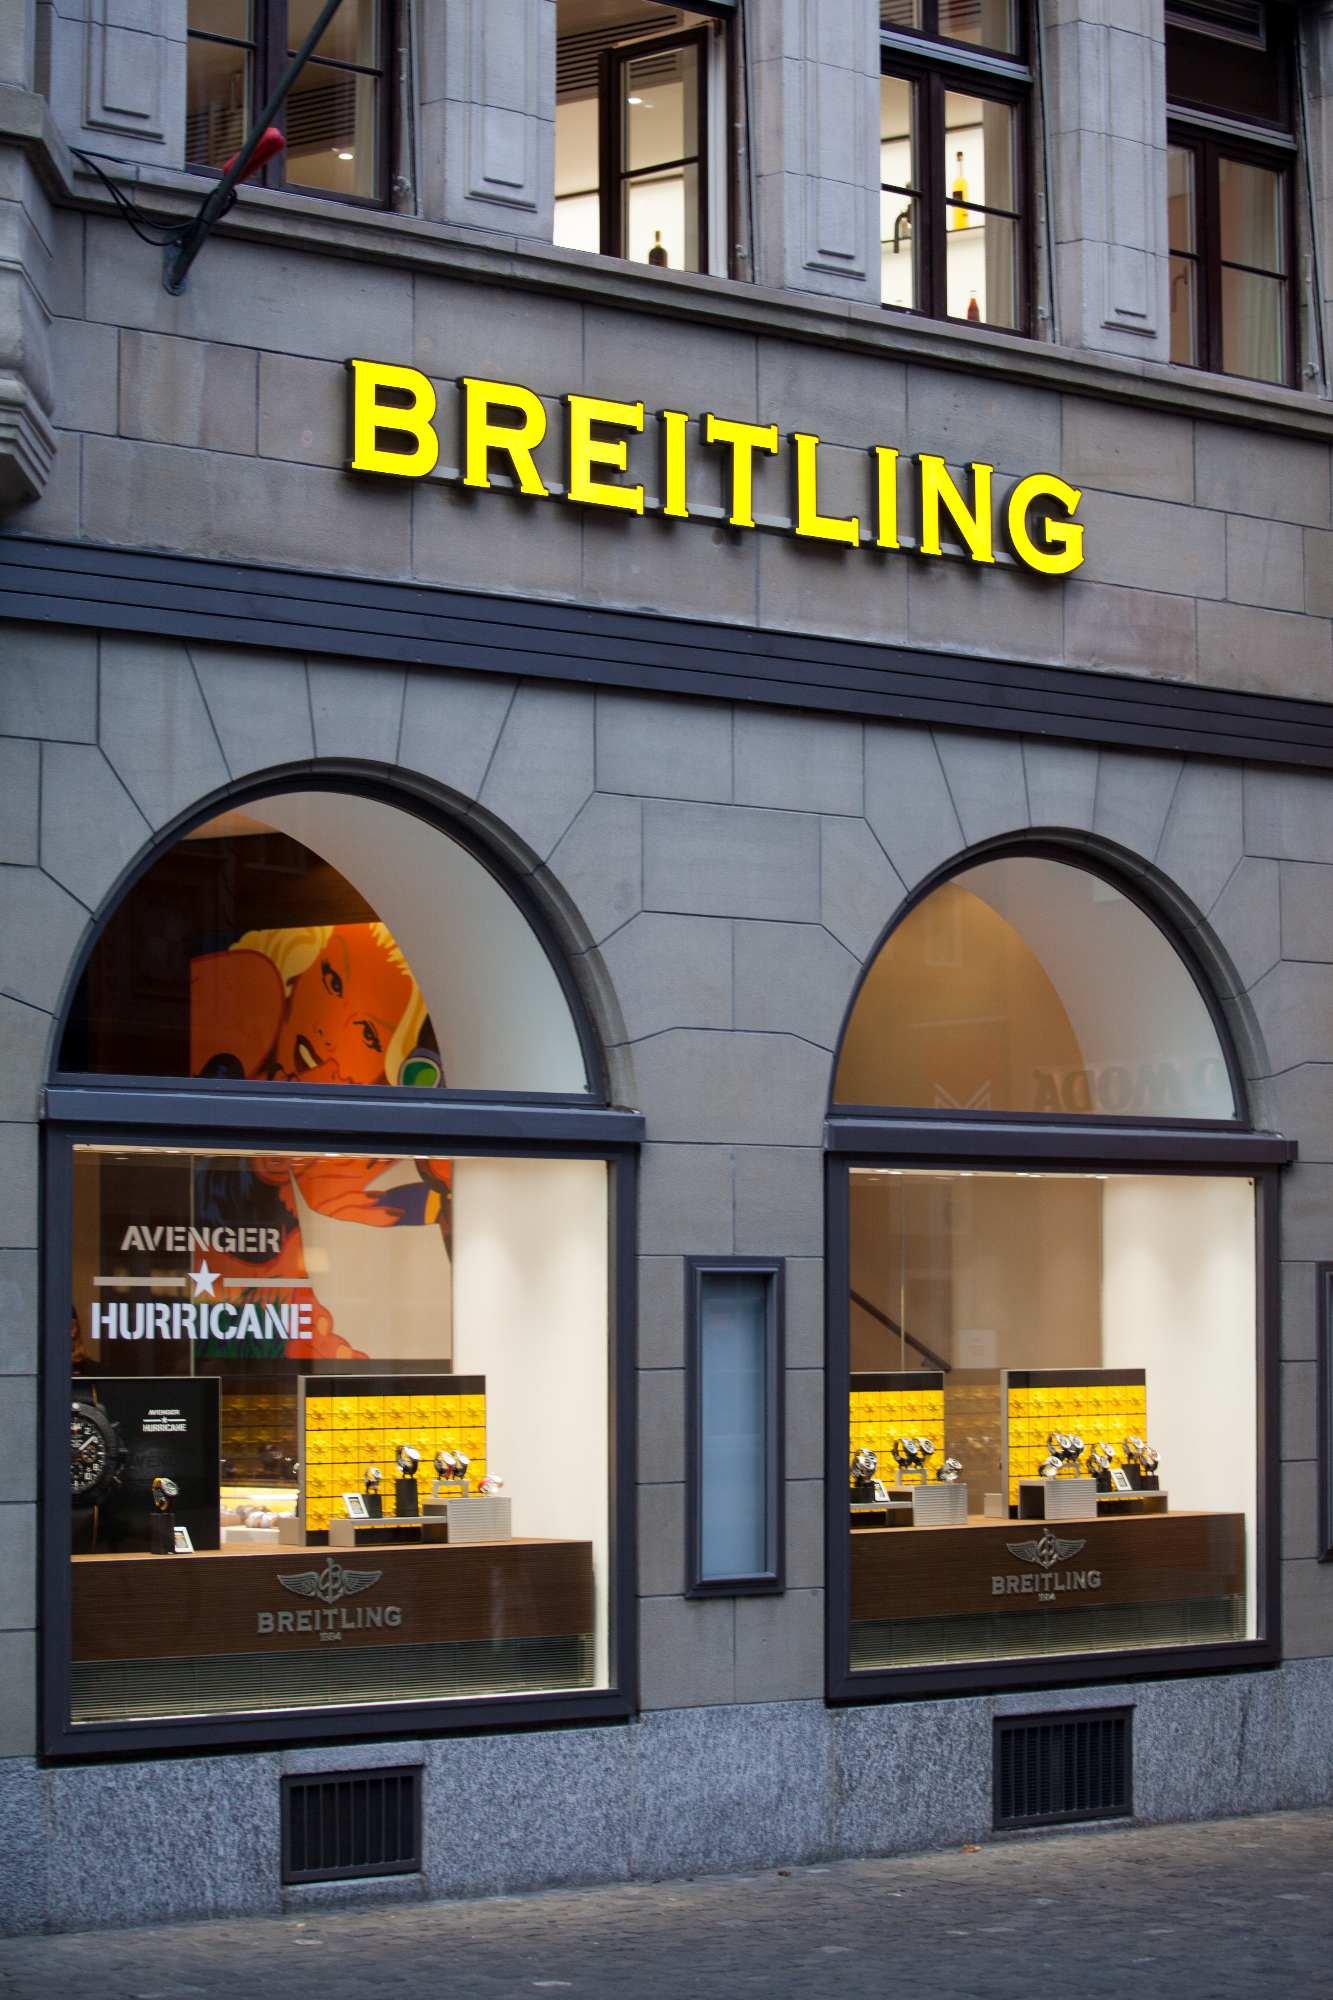 Breitling ure so dobra izbira med luksuznimi urami